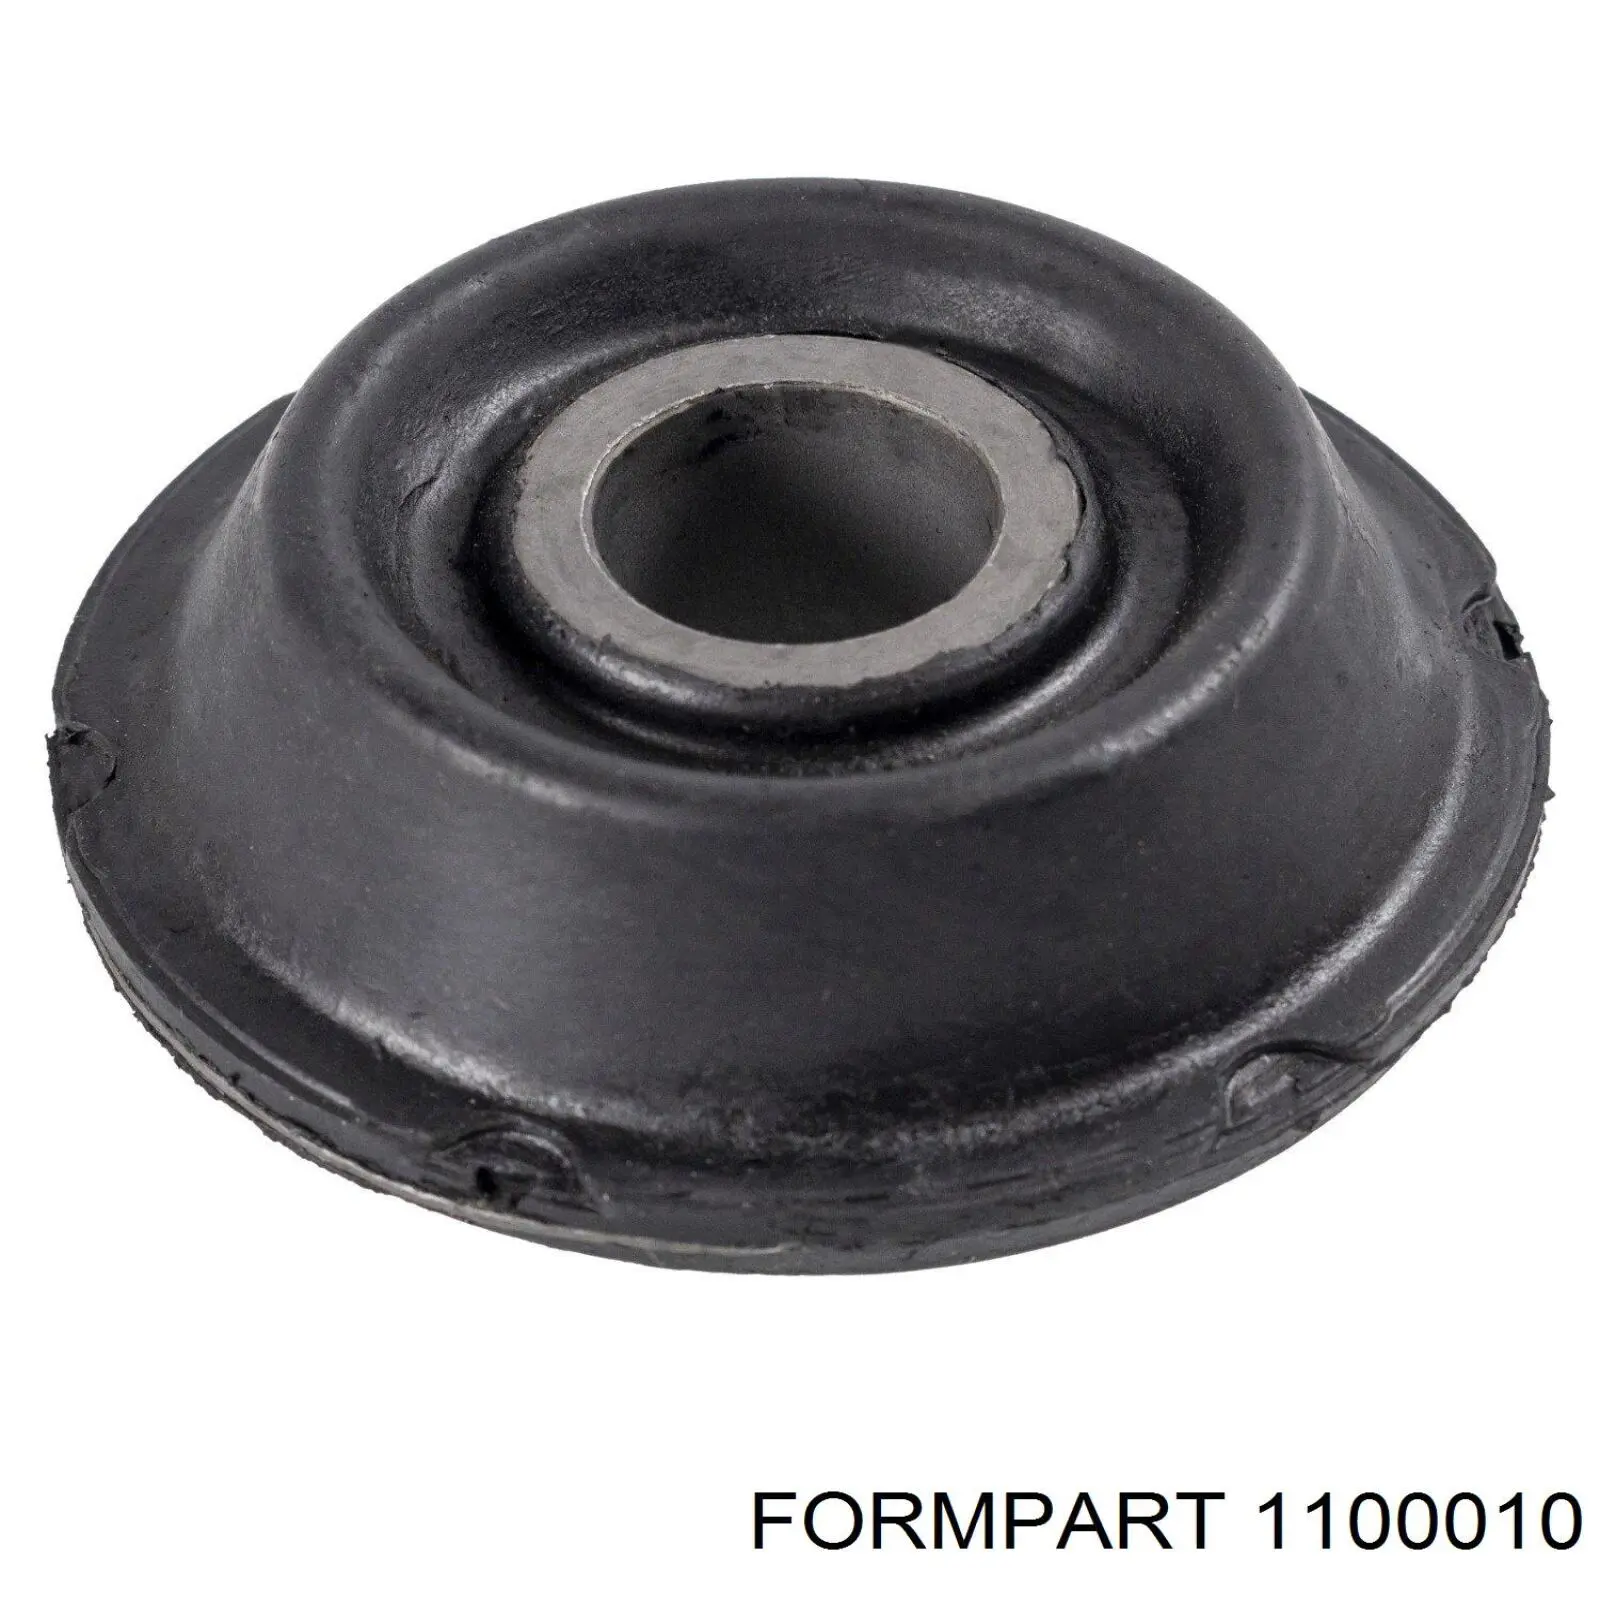 1100010 Formpart/Otoform silentblock de suspensión delantero inferior